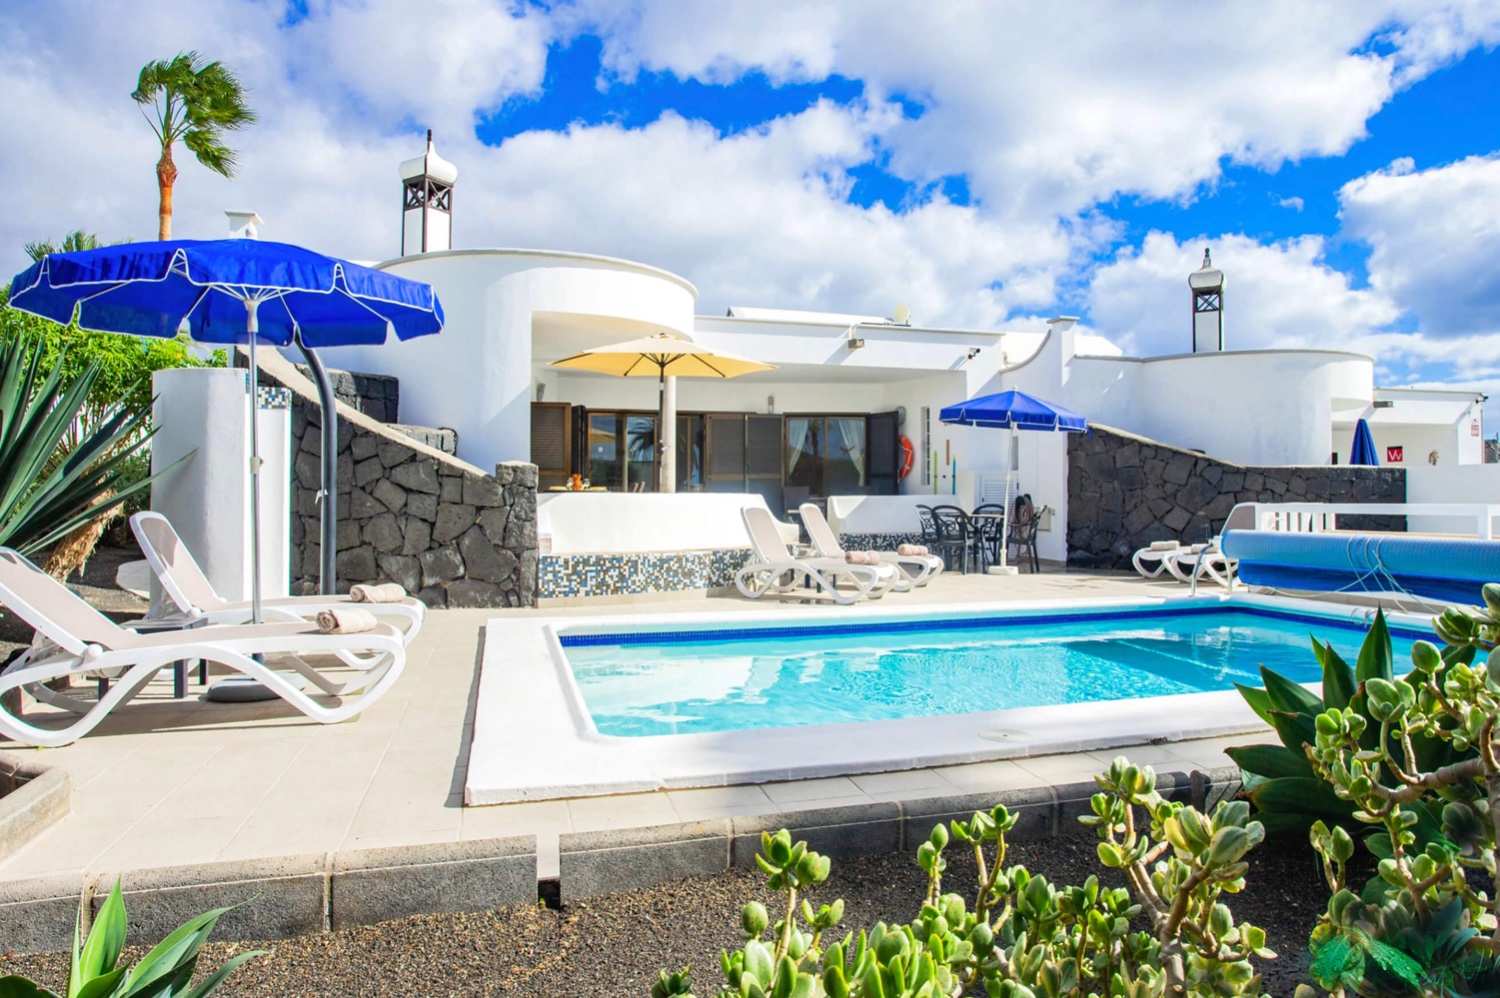 Dům se třemi ložnicemi a soukromým vyhřívaným bazénem v krásném rezidenčním komplexu v Playa Blanca na jihu ostrova